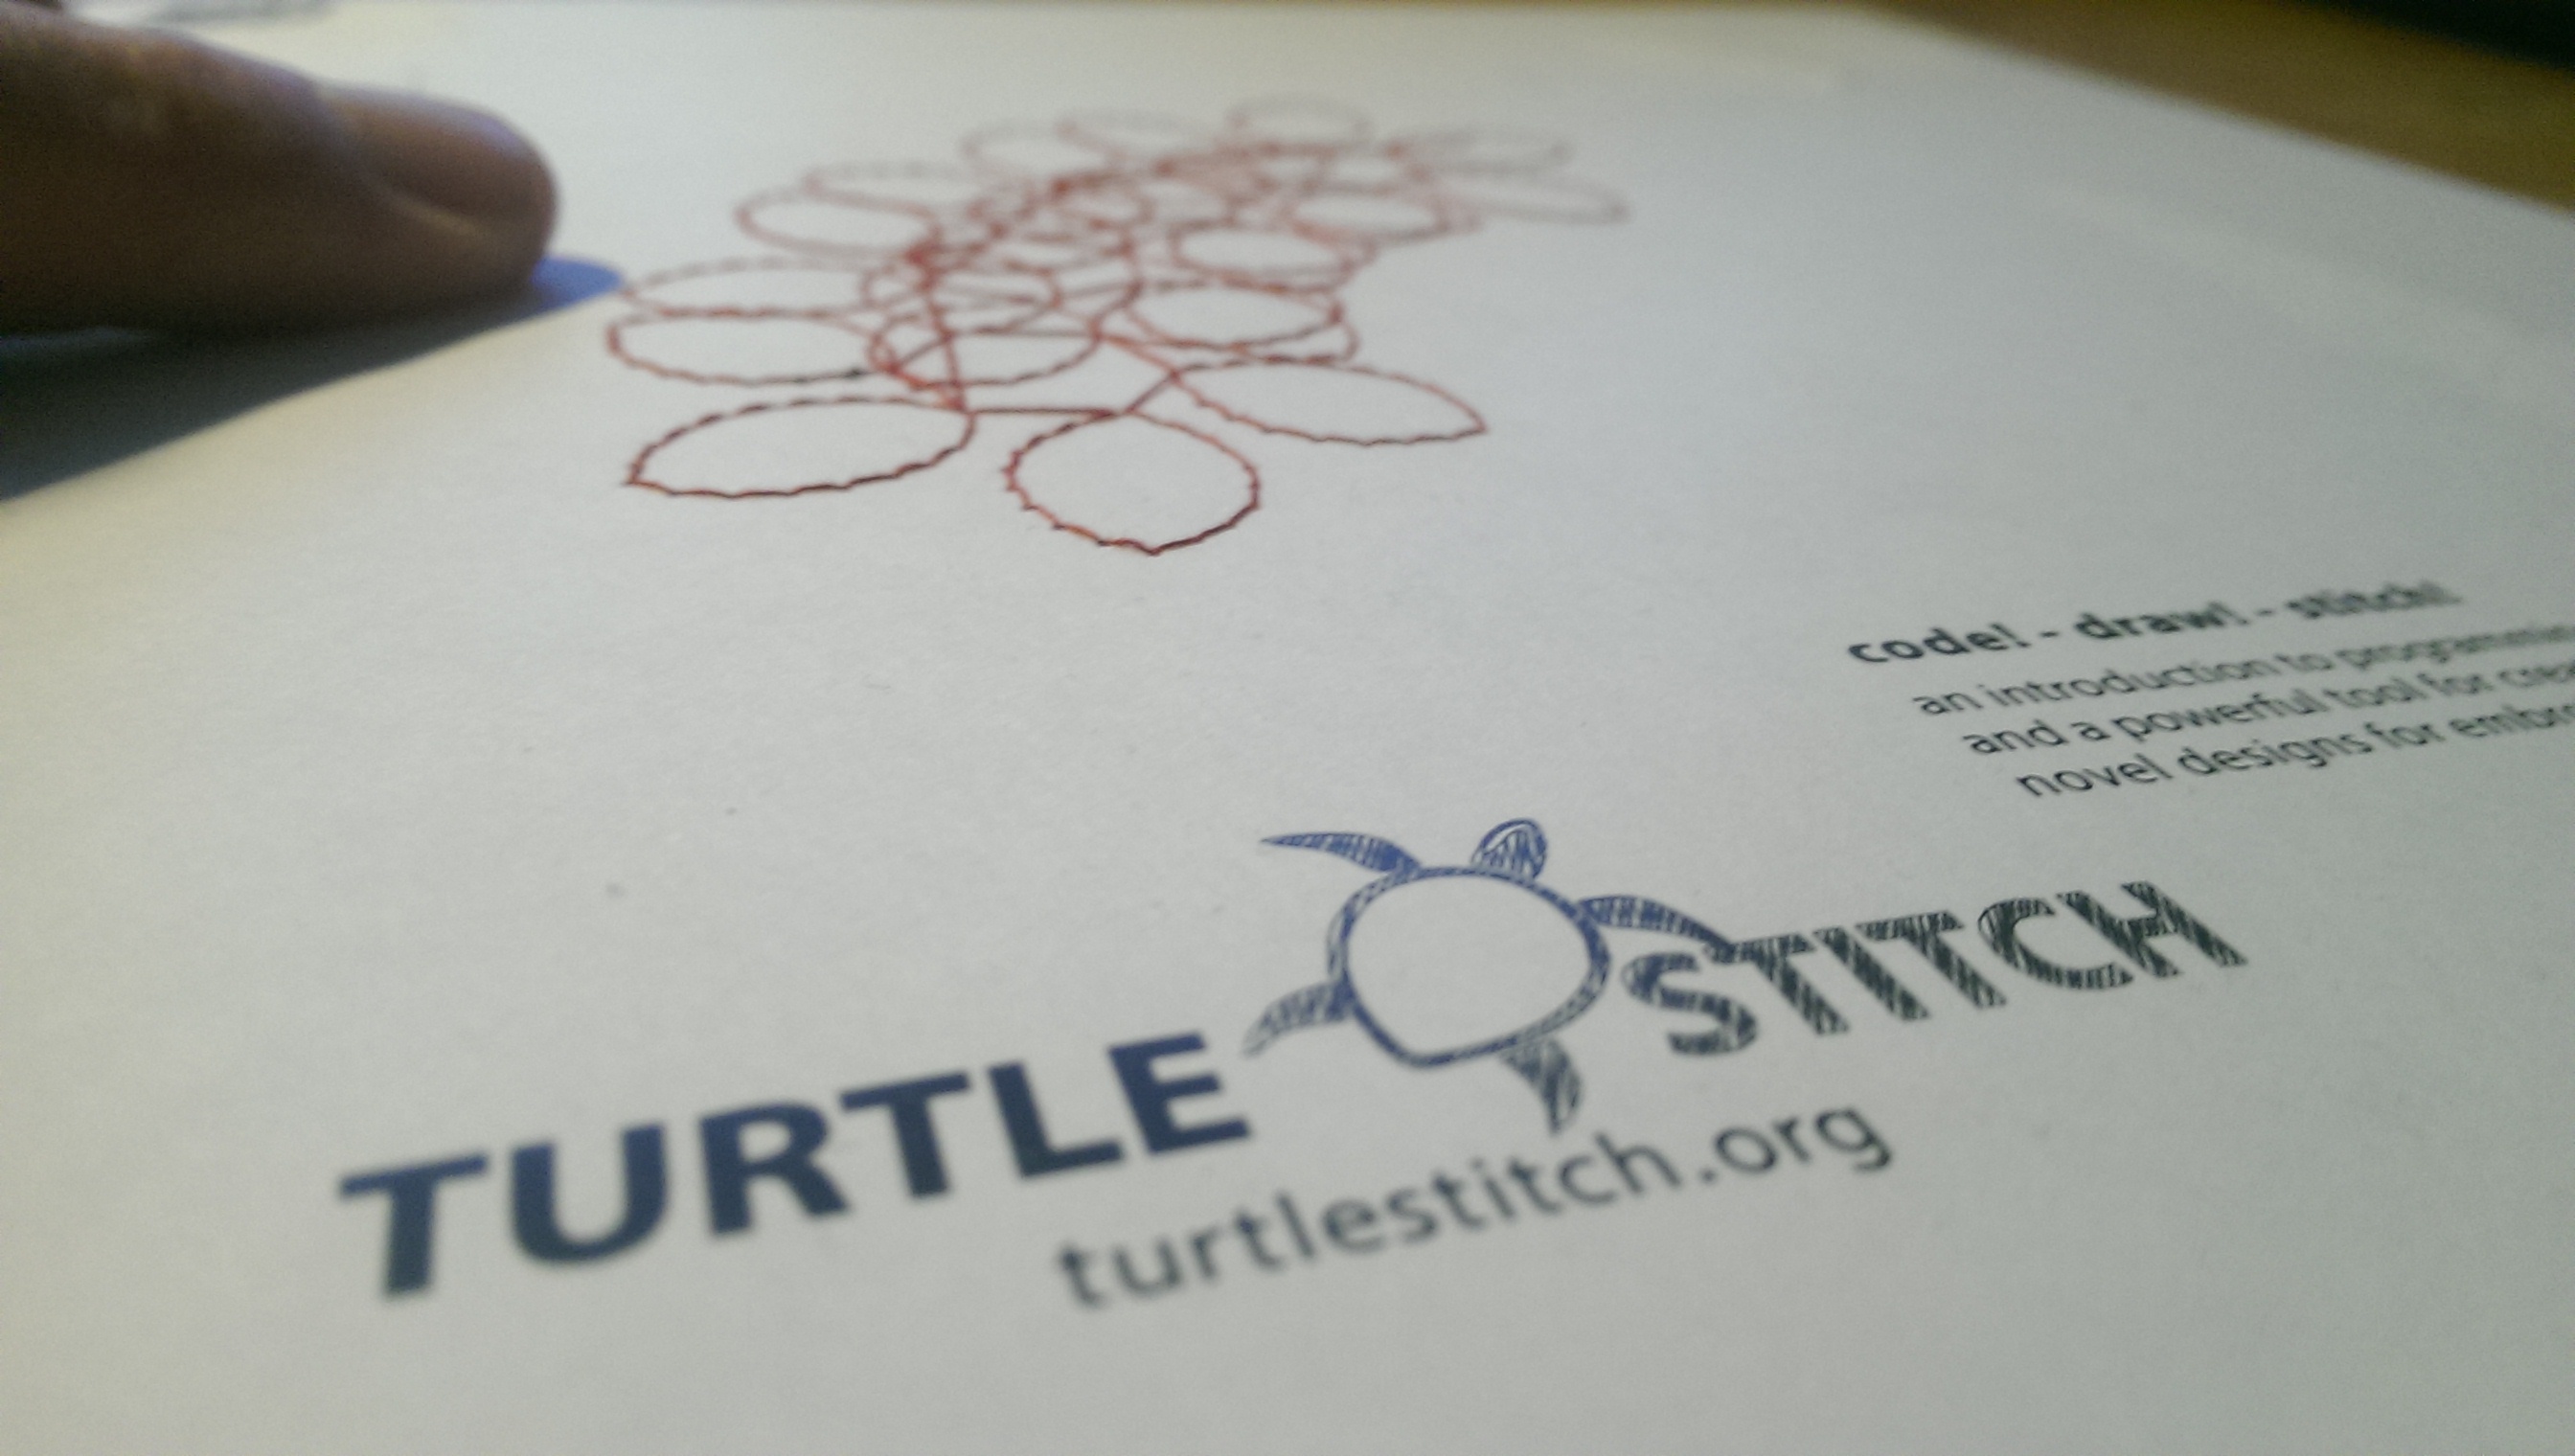 turtlestitch